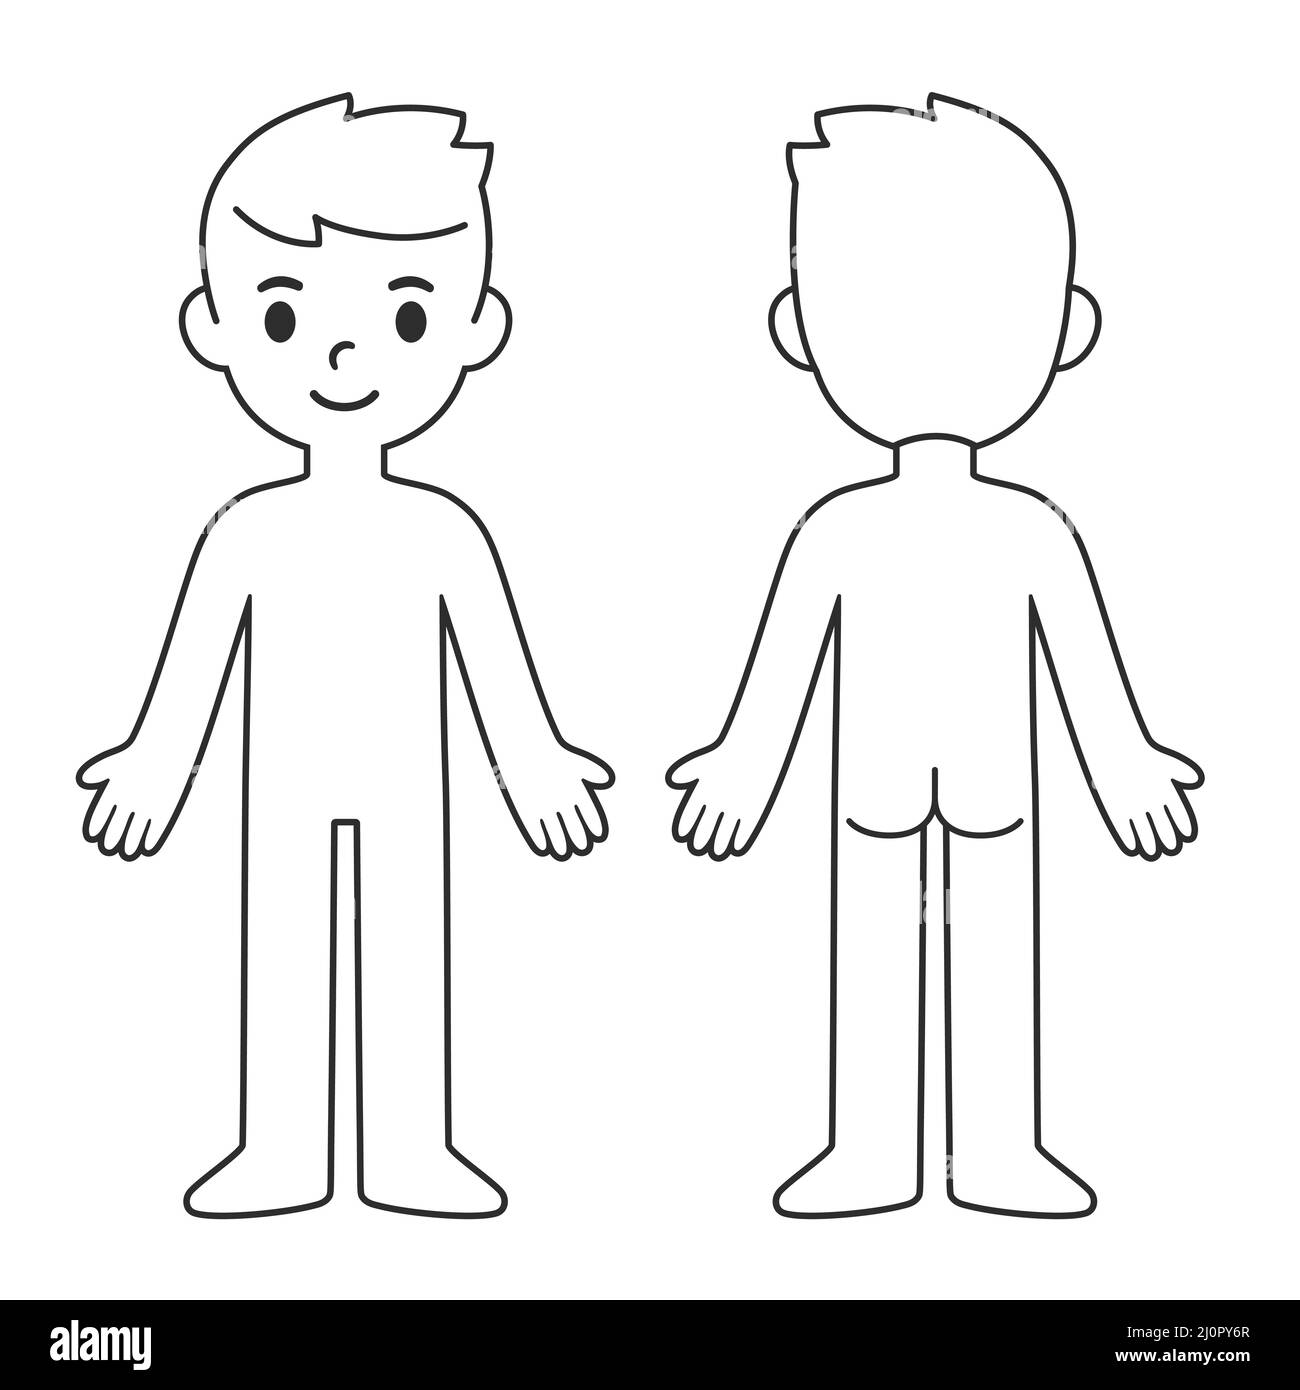 Tableau de dessin animé pour enfant, vue avant et arrière. Modèle de contour de corps de garçon vierge. Illustration vectorielle isolée. Illustration de Vecteur